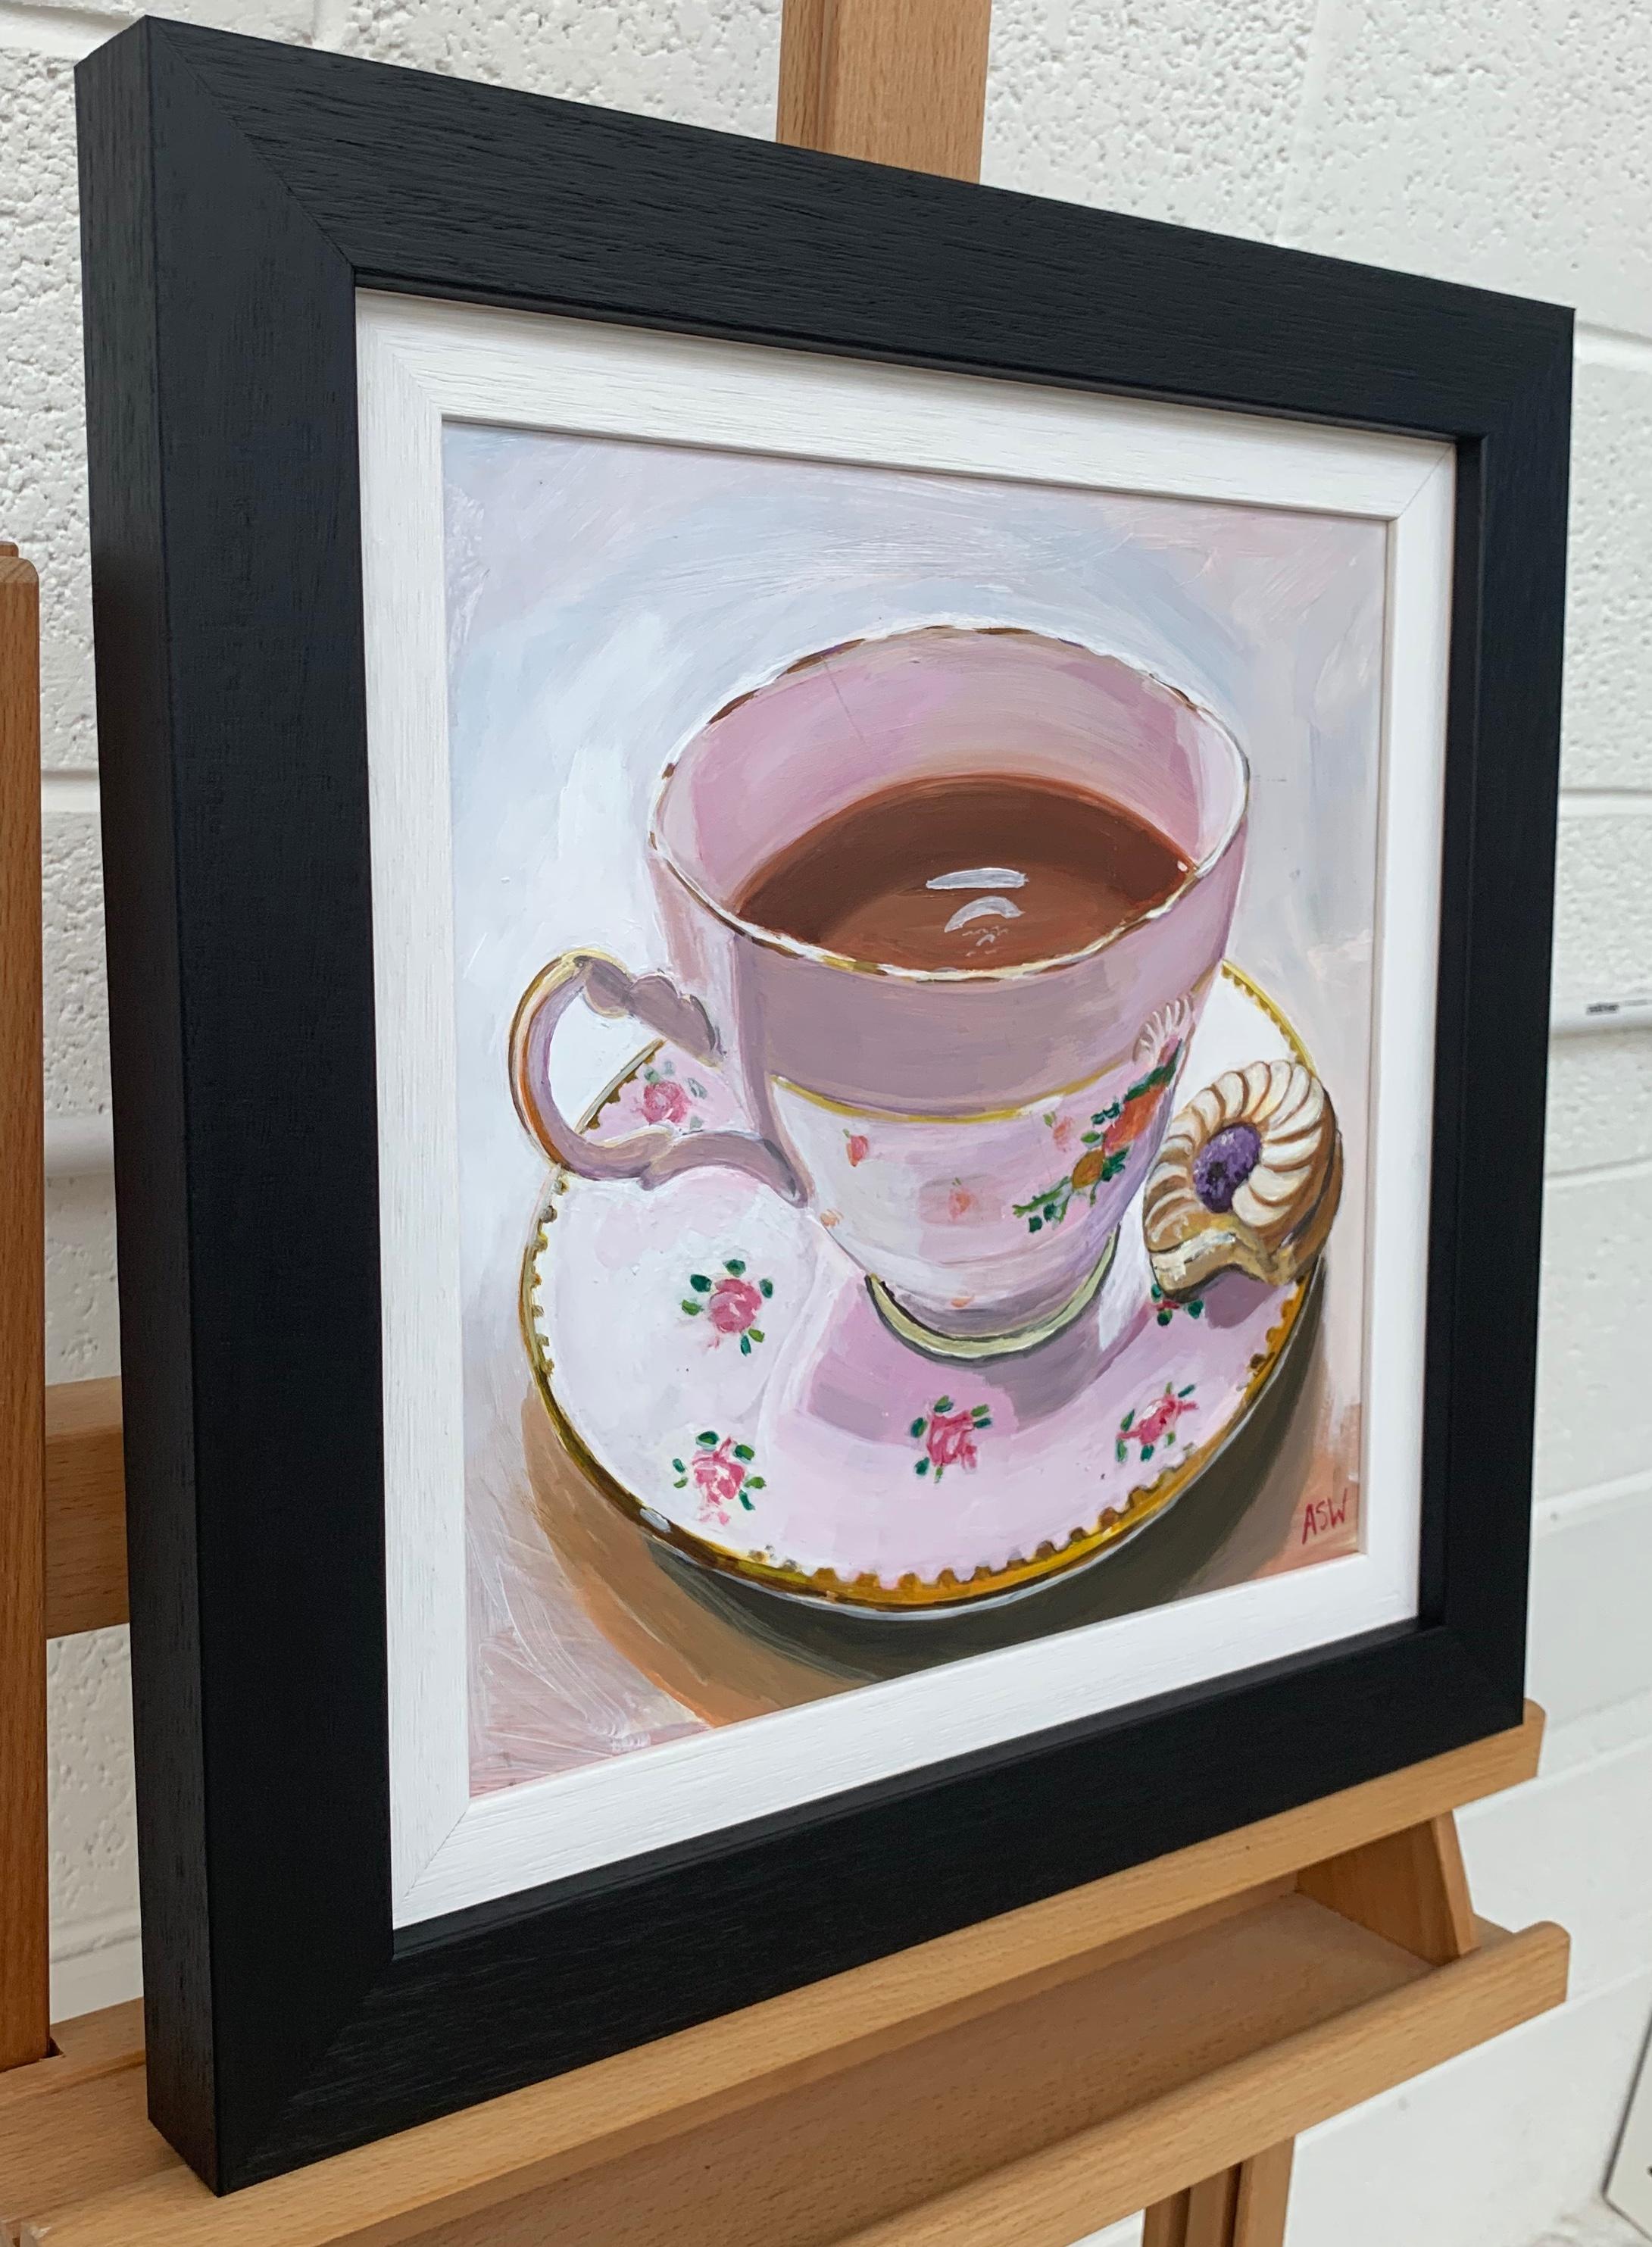 Stillleben-Gemälde eines englischen Knochenporzellan-Teekannes und eines Biskuittellers des britischen Künstlers (Realismus), Painting, von Angela Wakefield